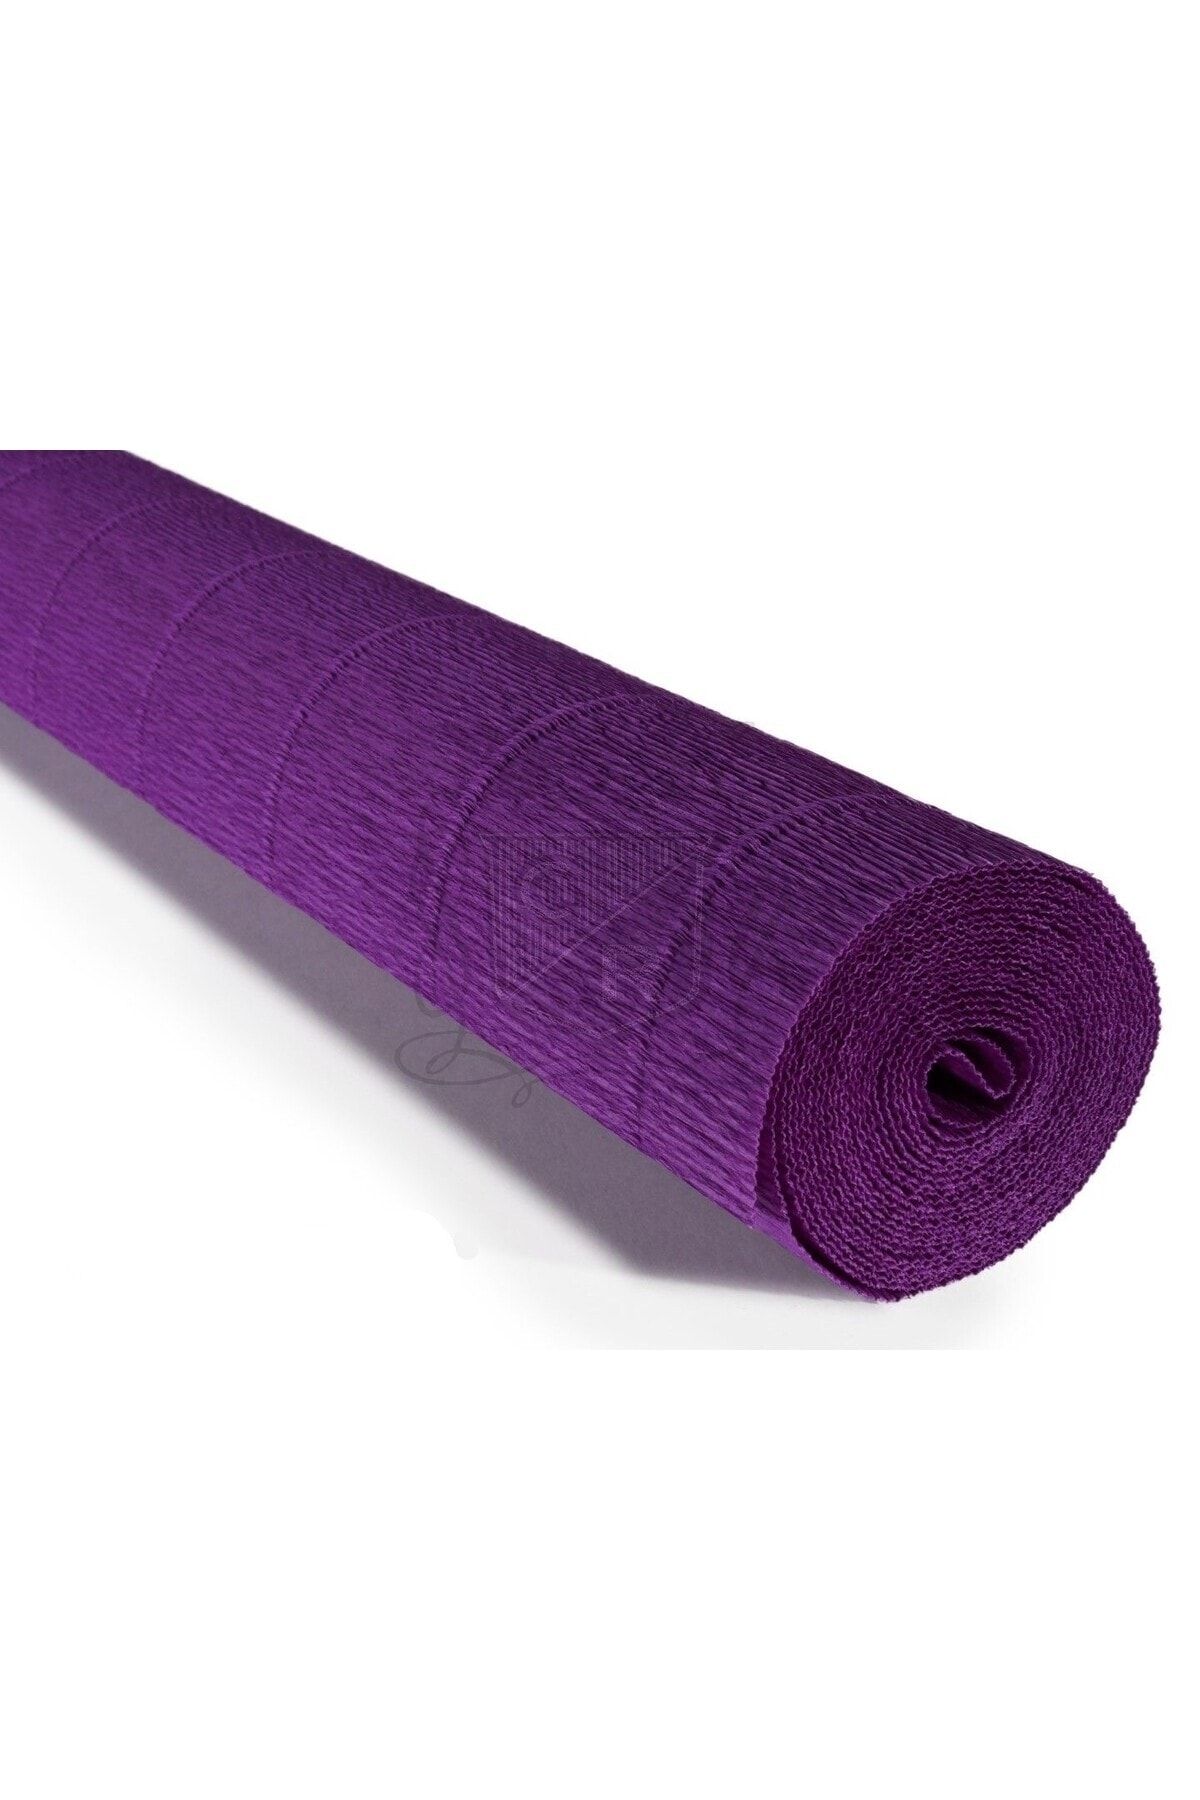 roco paper Italyan Krapon Kağıdı No:593 -mor - Violet Purple 180 Gr. 50x250 Cm